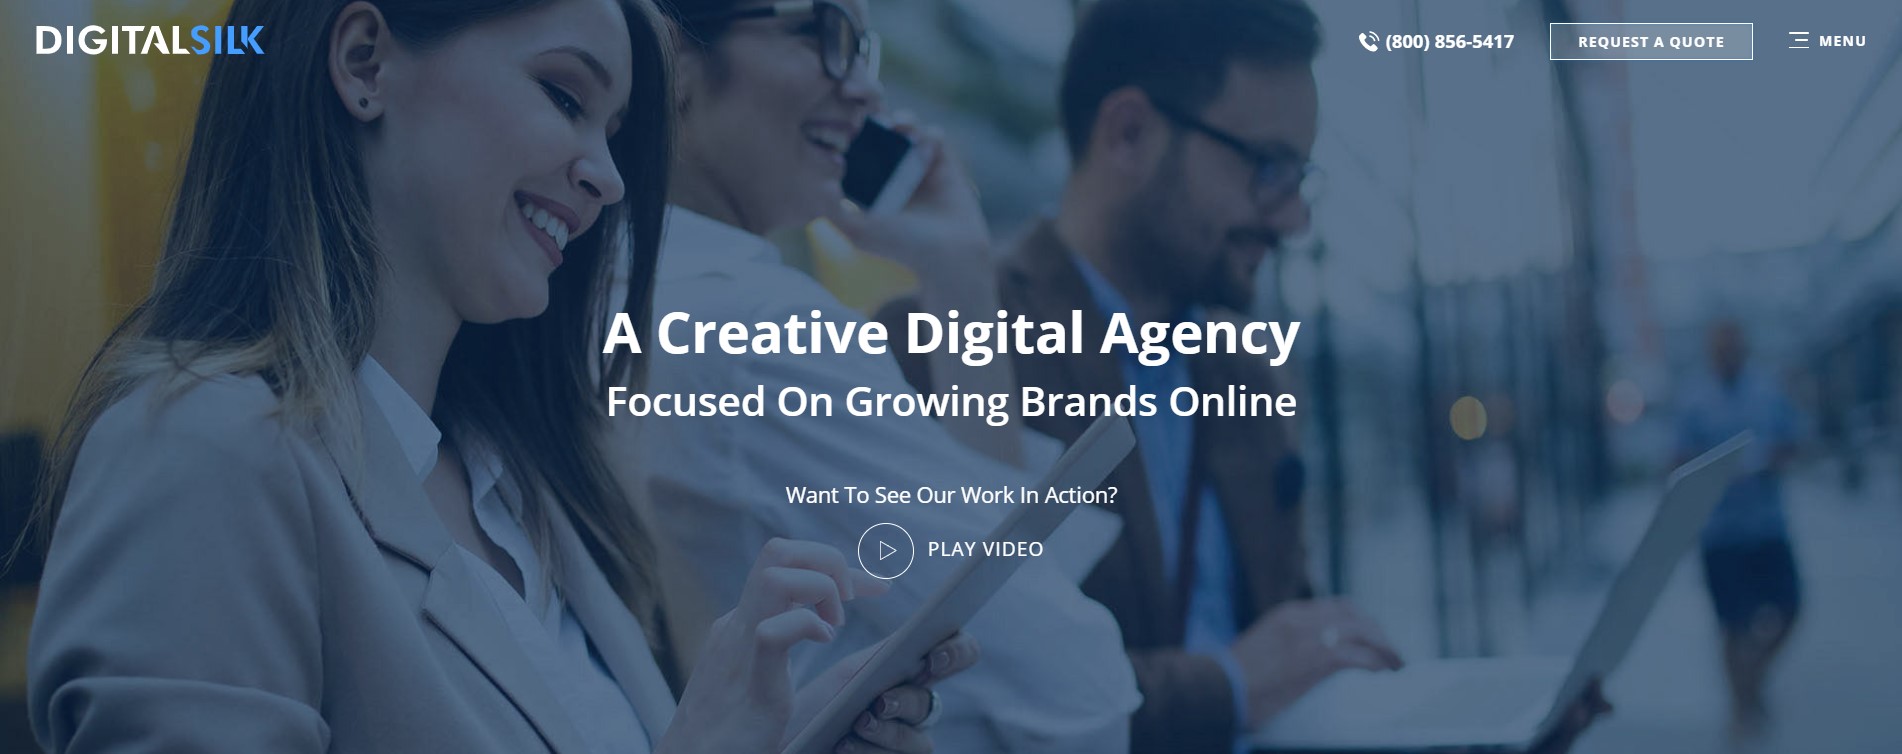 Digital Silk - A Creative Digital Agency